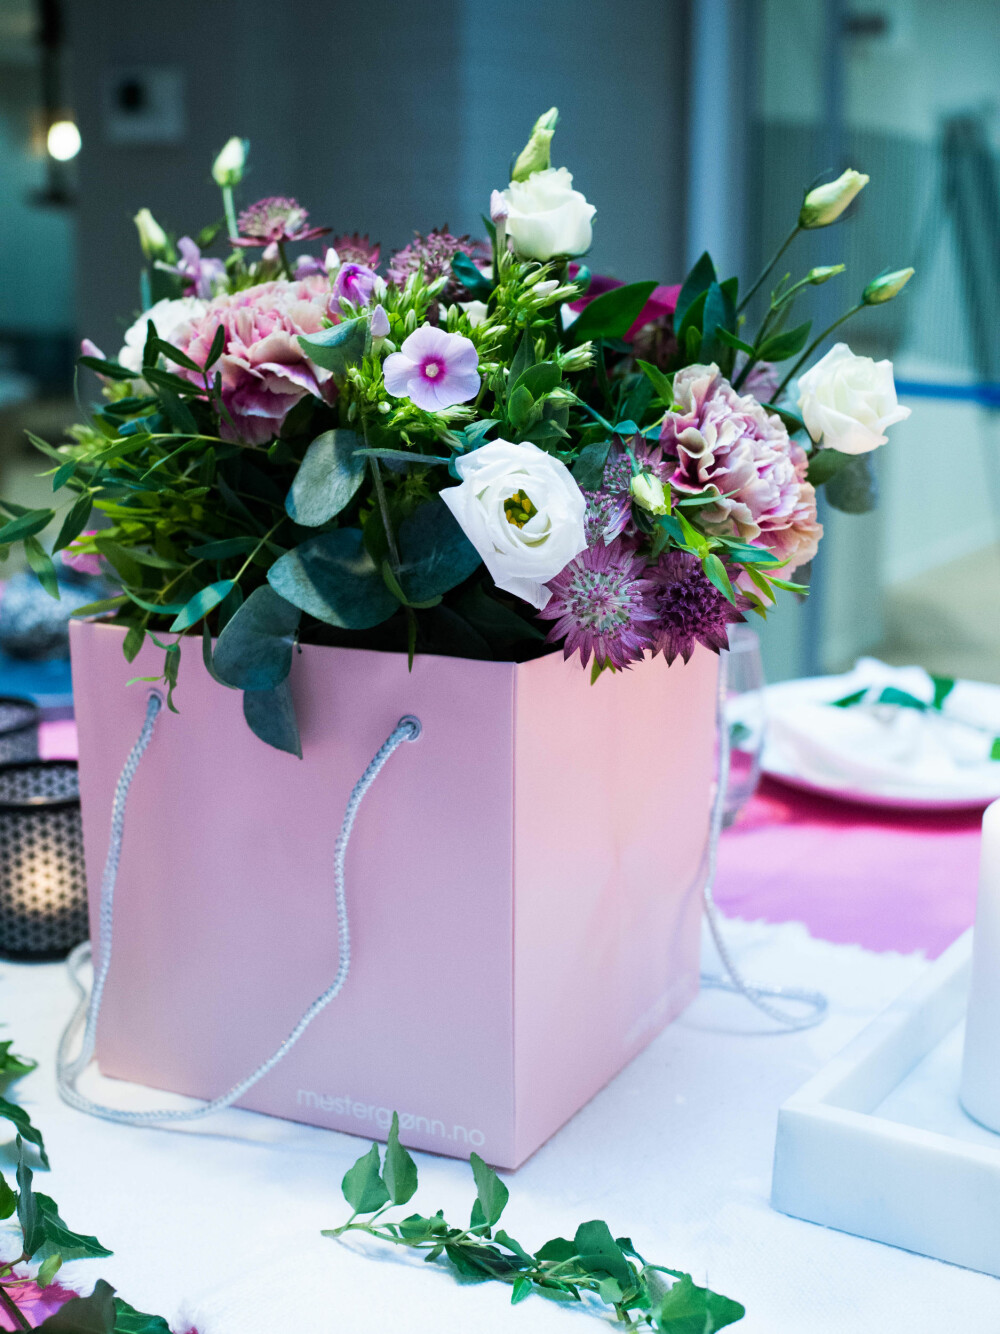 LEKRE DETALJER: Planter og blomster skaper liv på bordet, samtidig som det tilfører farge.